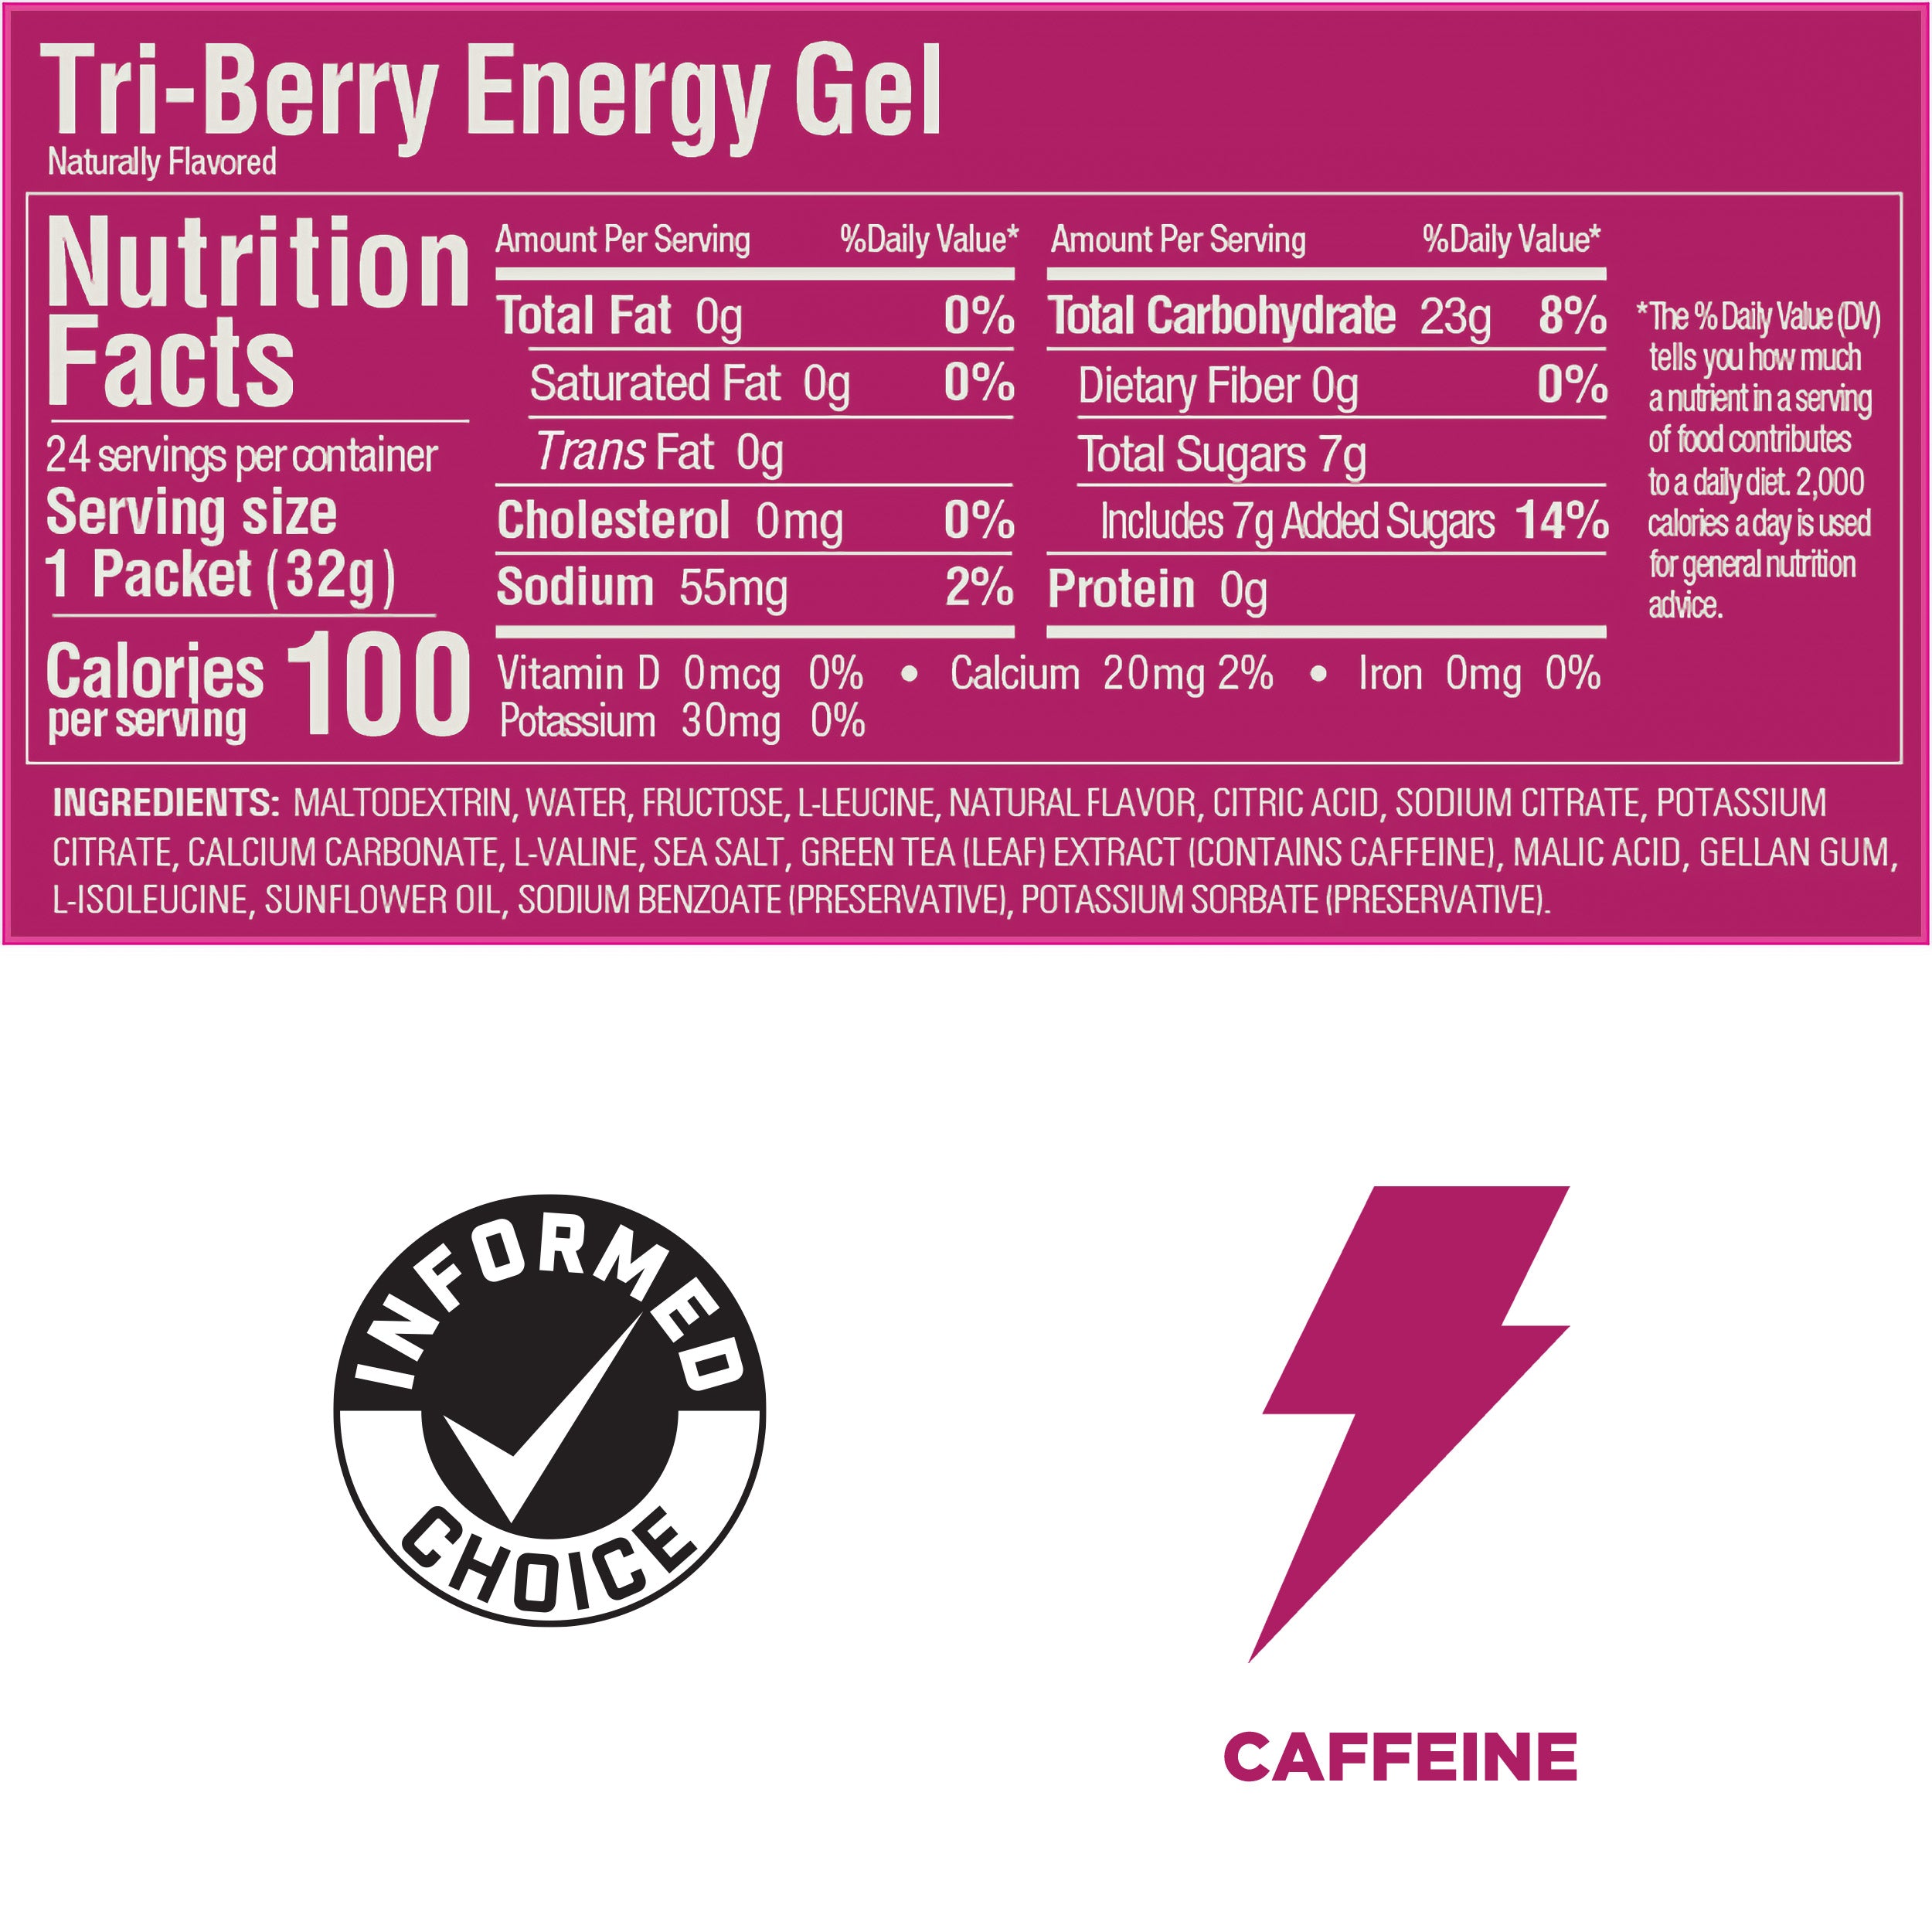 GU Tri Berry Energy Gel (Best by: May 2024)